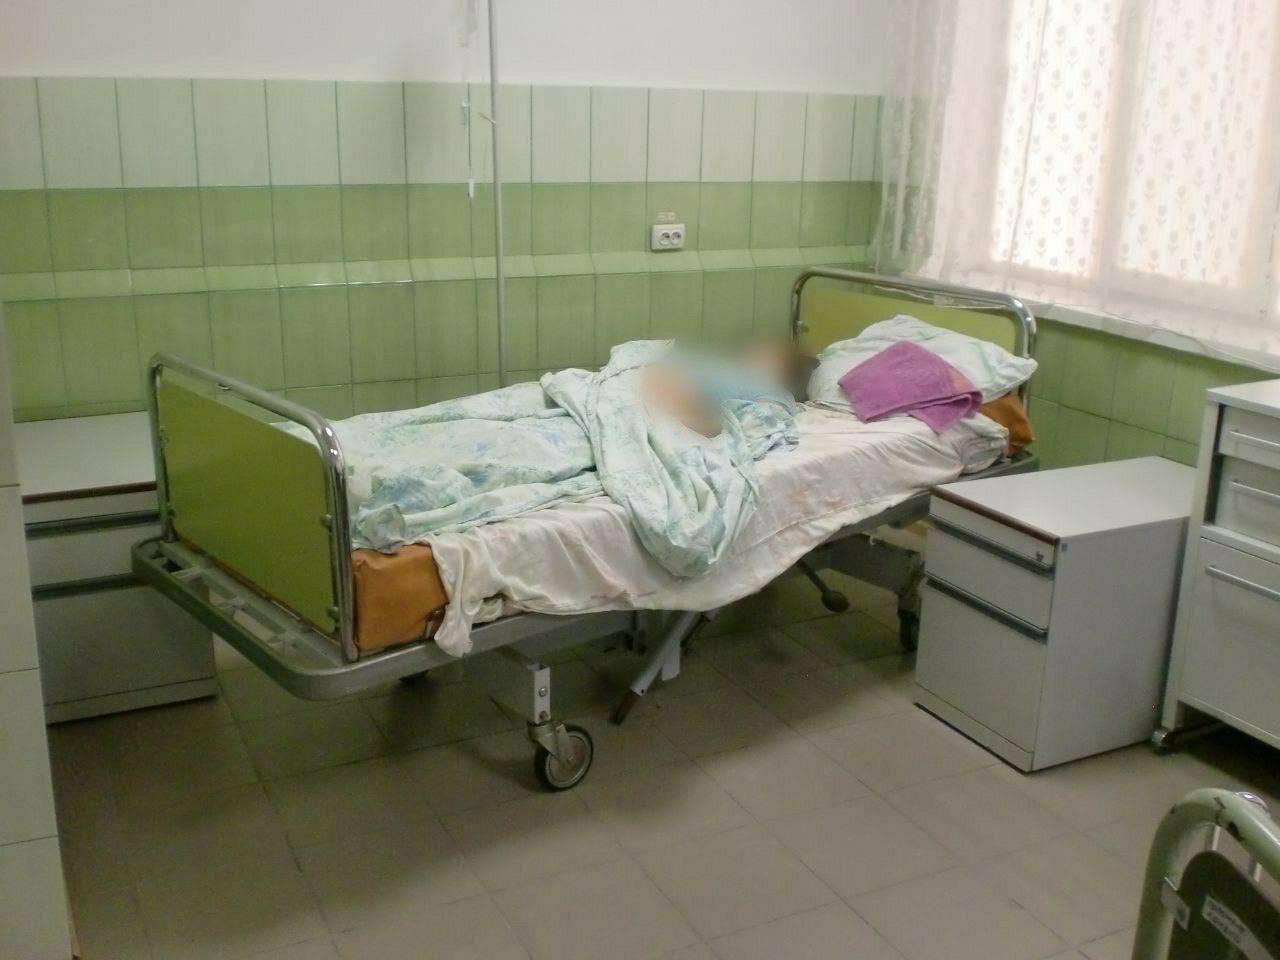 Третья смерть ребенка за два дня: в Киевской области умер 4-летний мальчик, которого накормили грибами. Фото